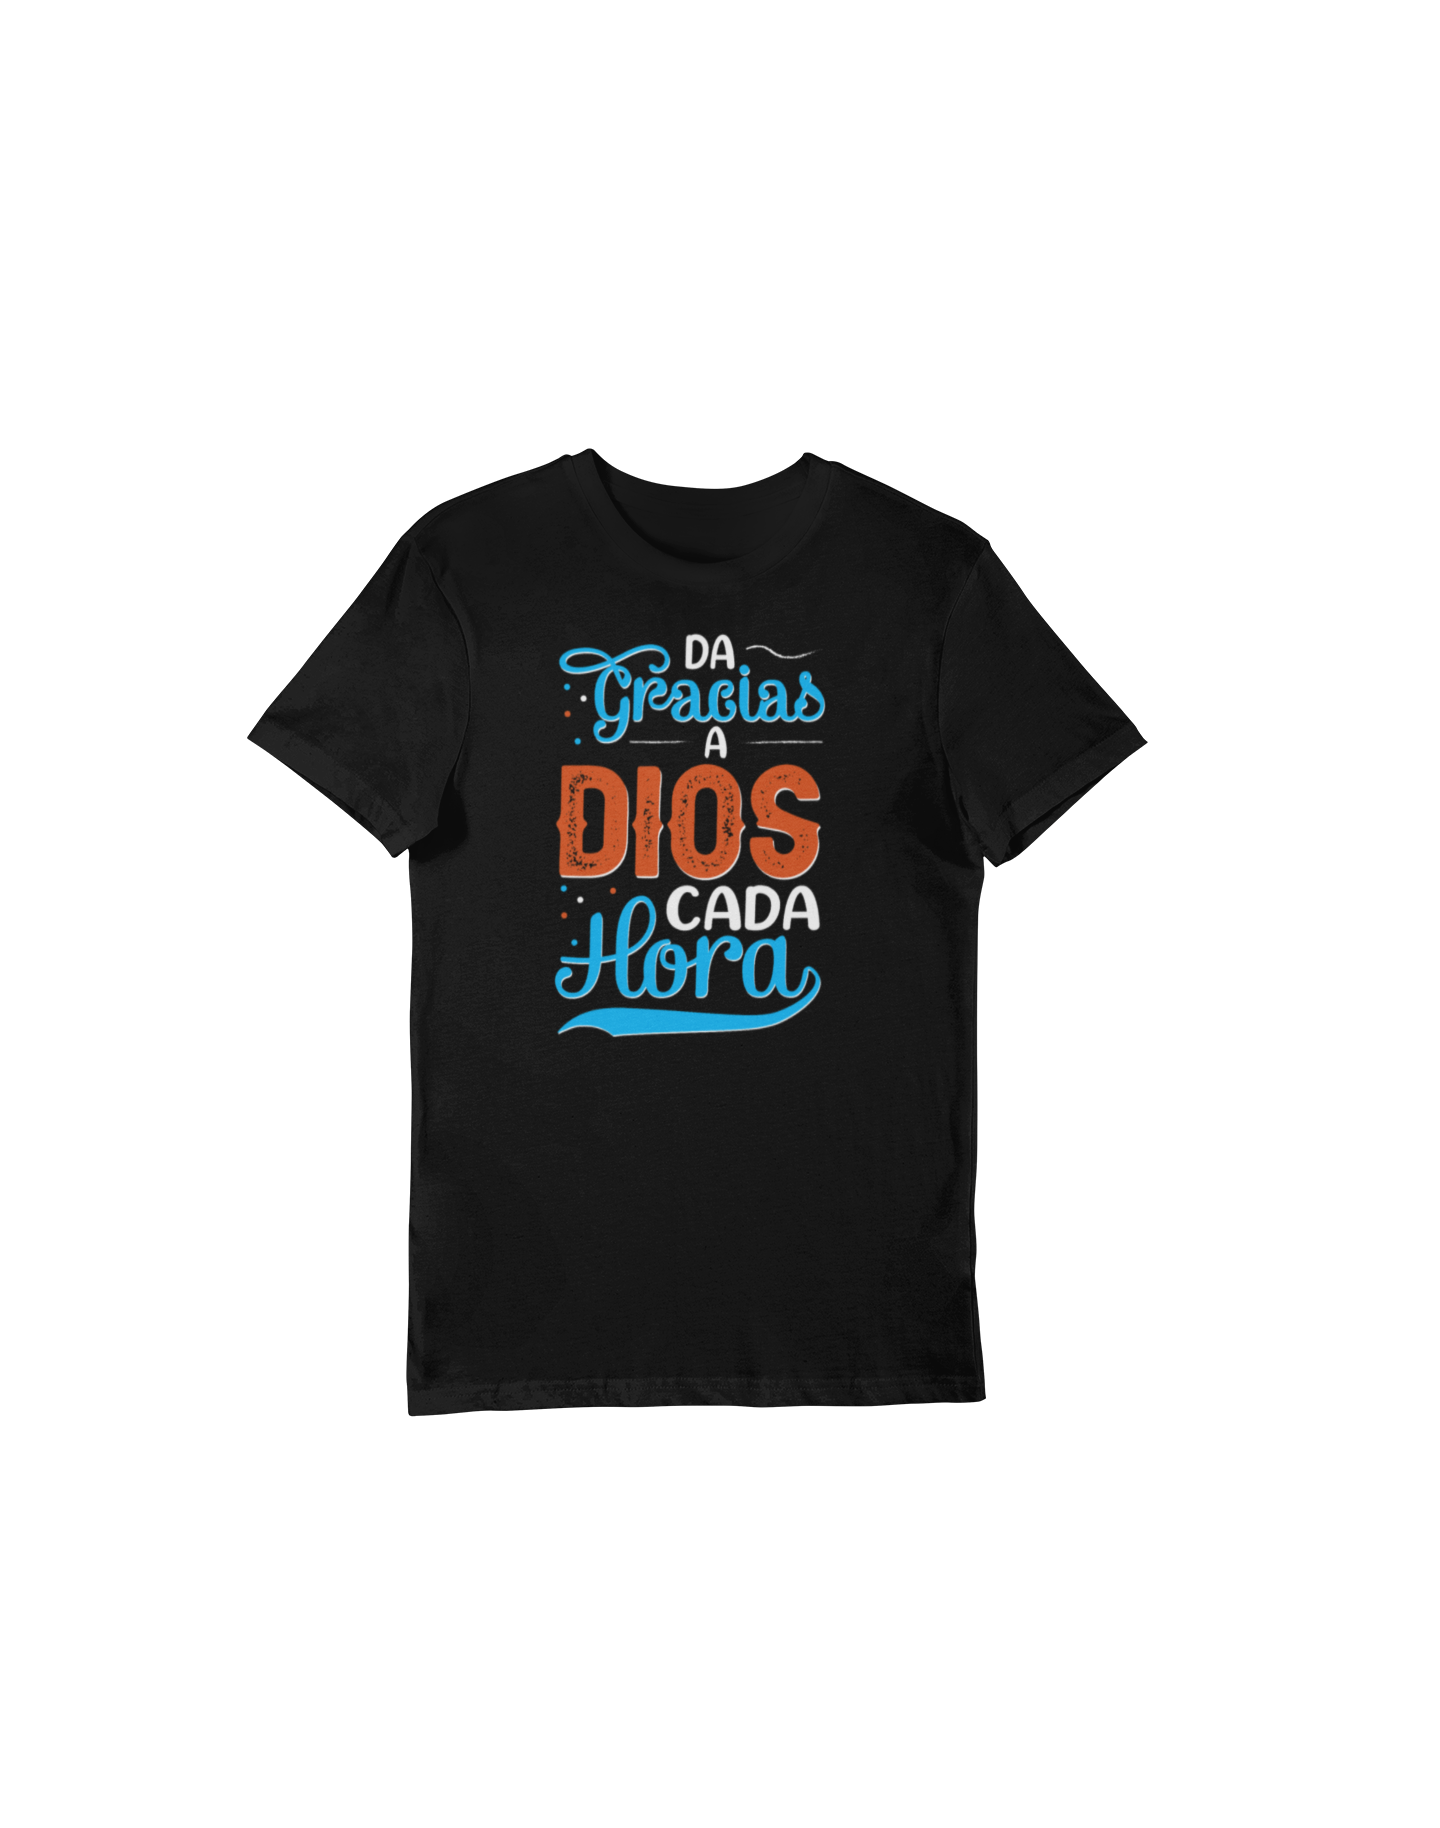 Da Gracias A Dios Cada Hora - Spanish Christian Graphic T-Shirt by Divinity Boutique